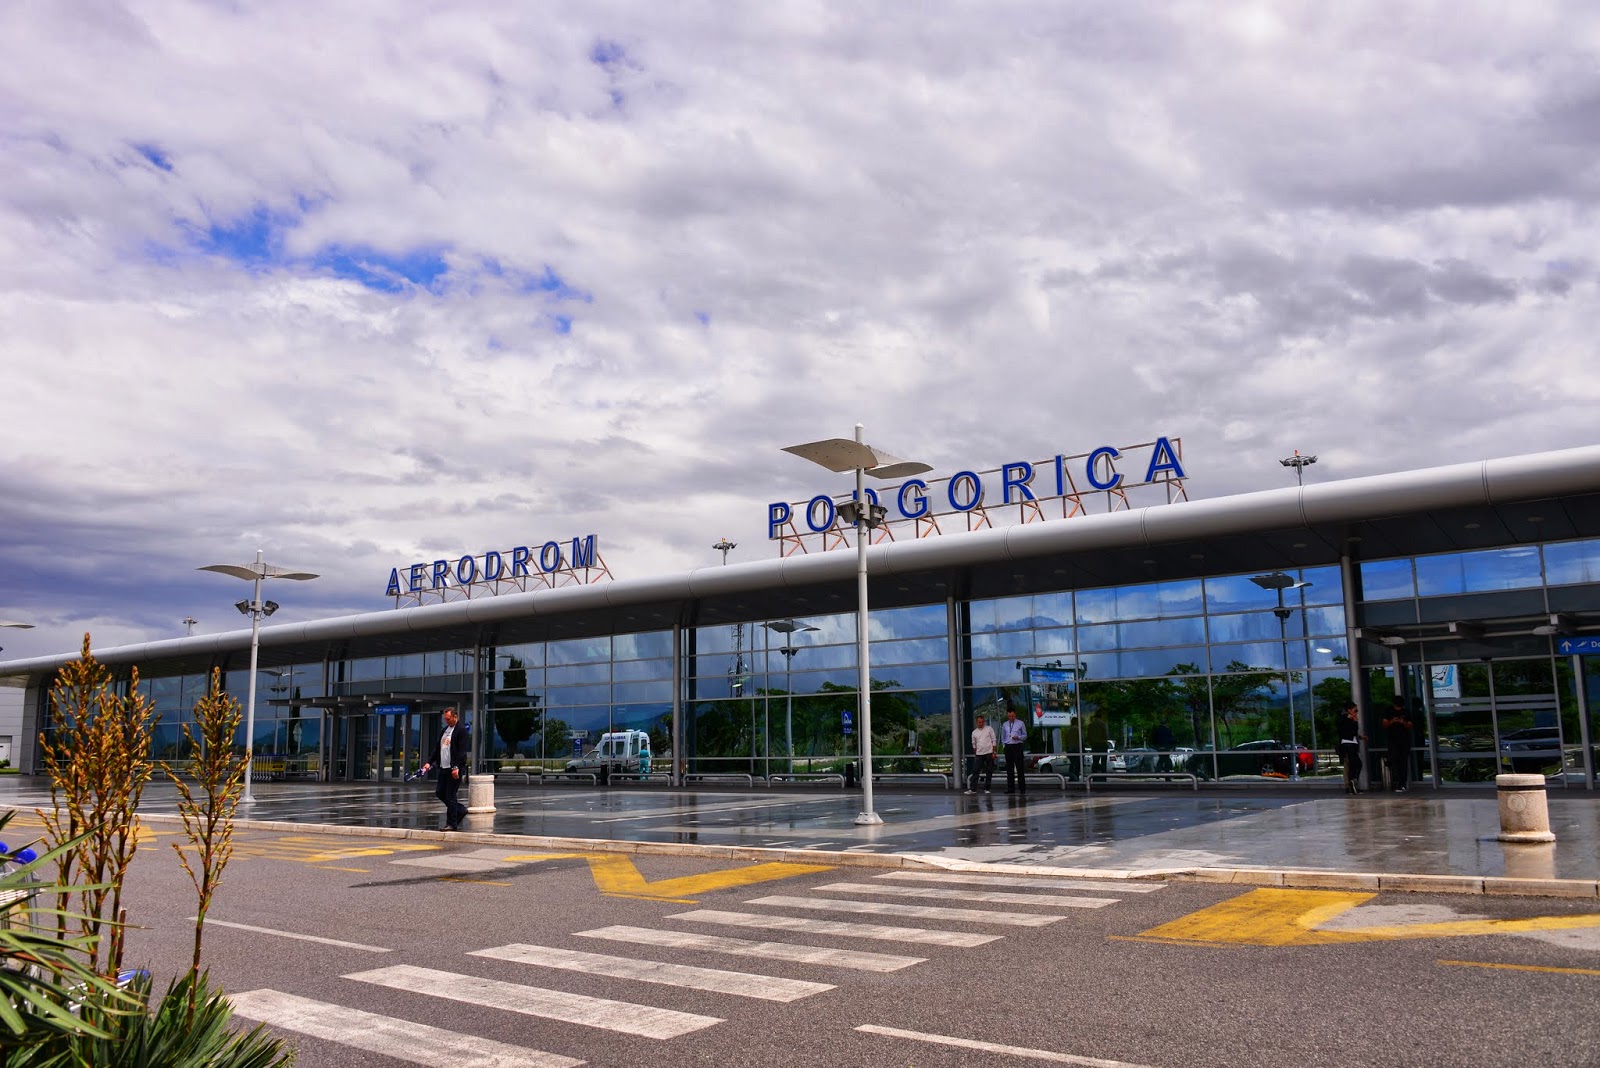 Международные аэропорты черногории - тиват и подгорица